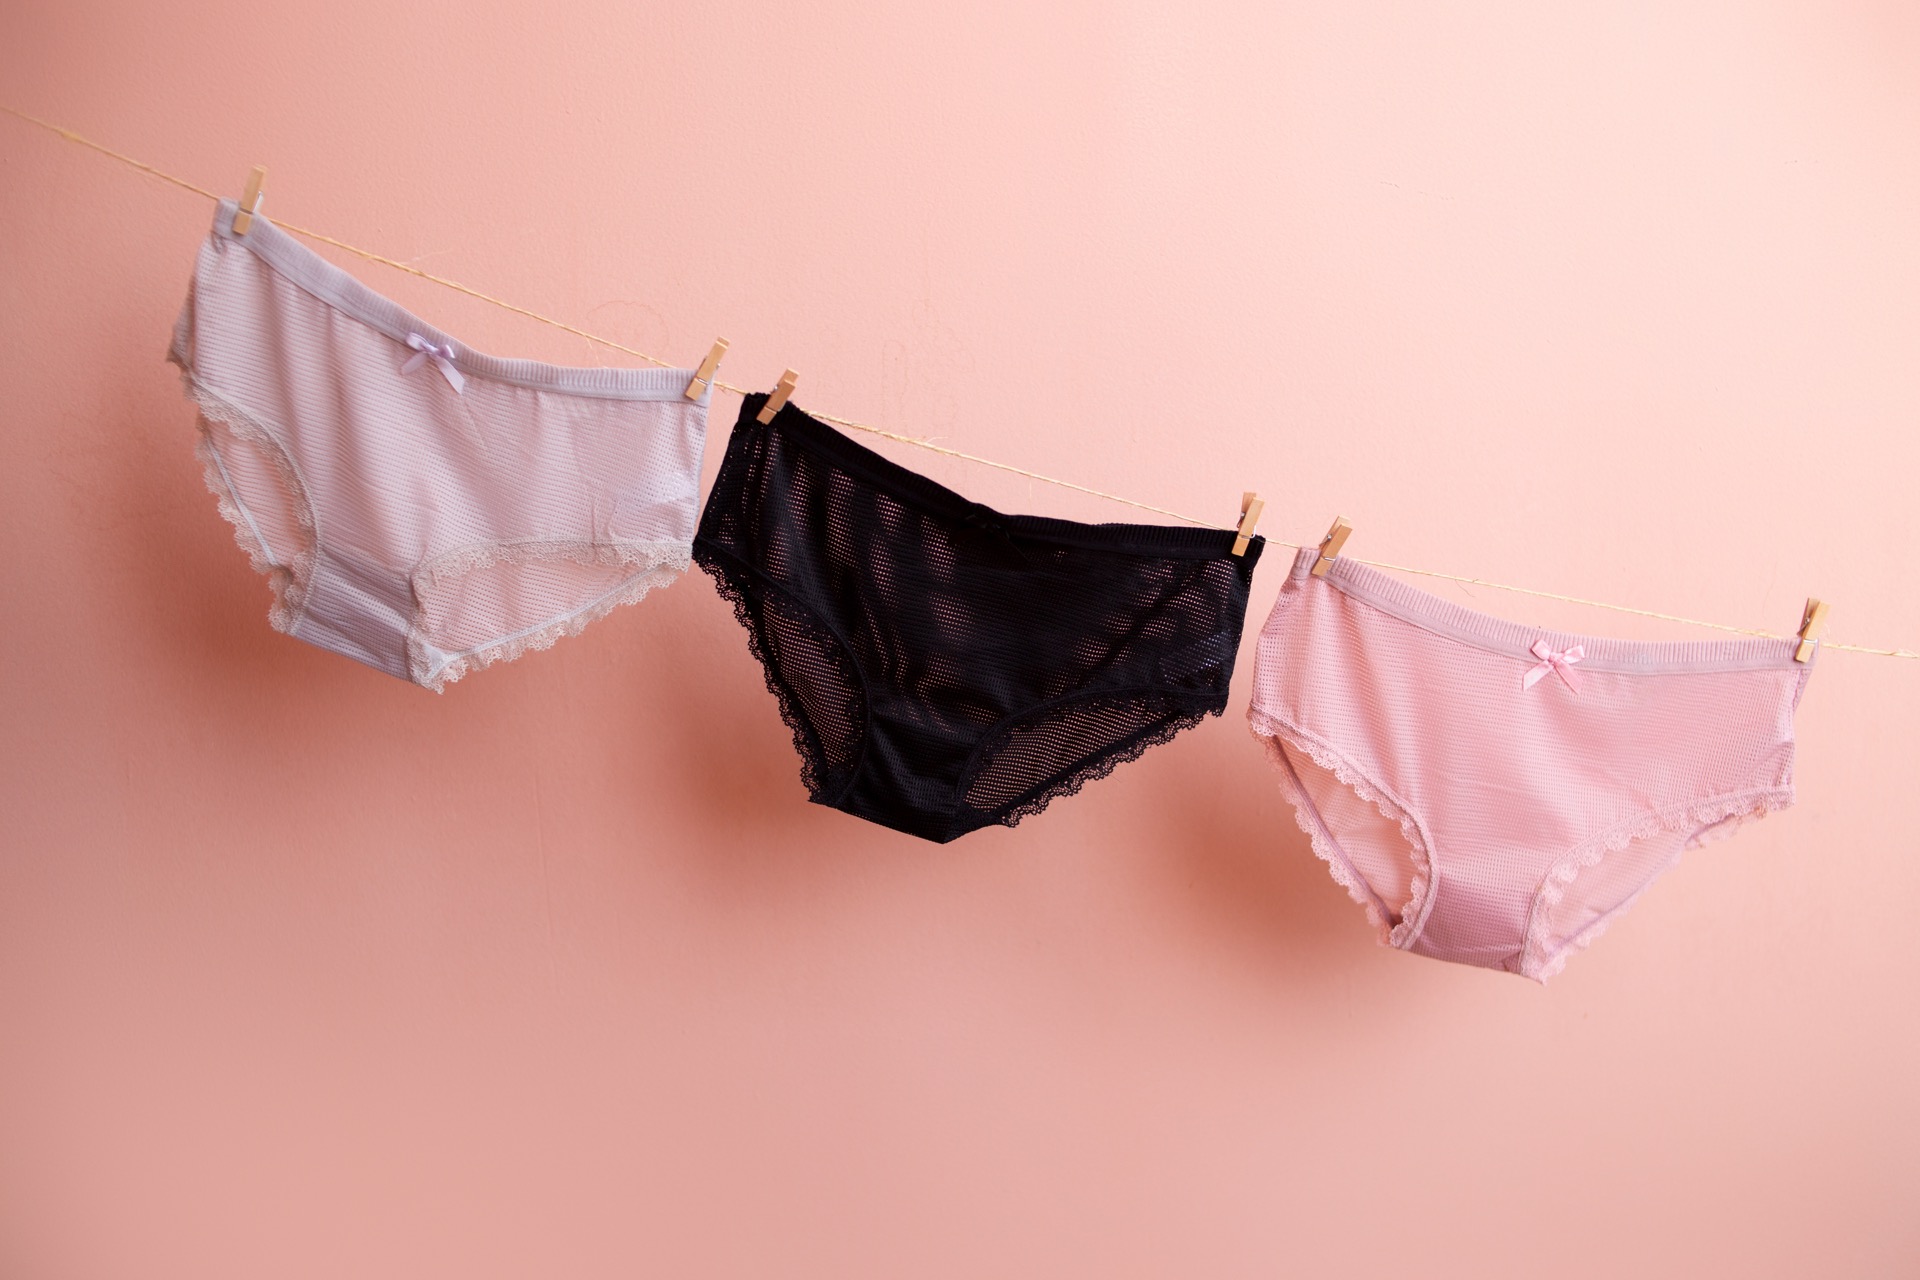 Comment choisir, utiliser et prendre soin d'une culotte menstruelle ? © AJ_stock_photos, Adobe Stock